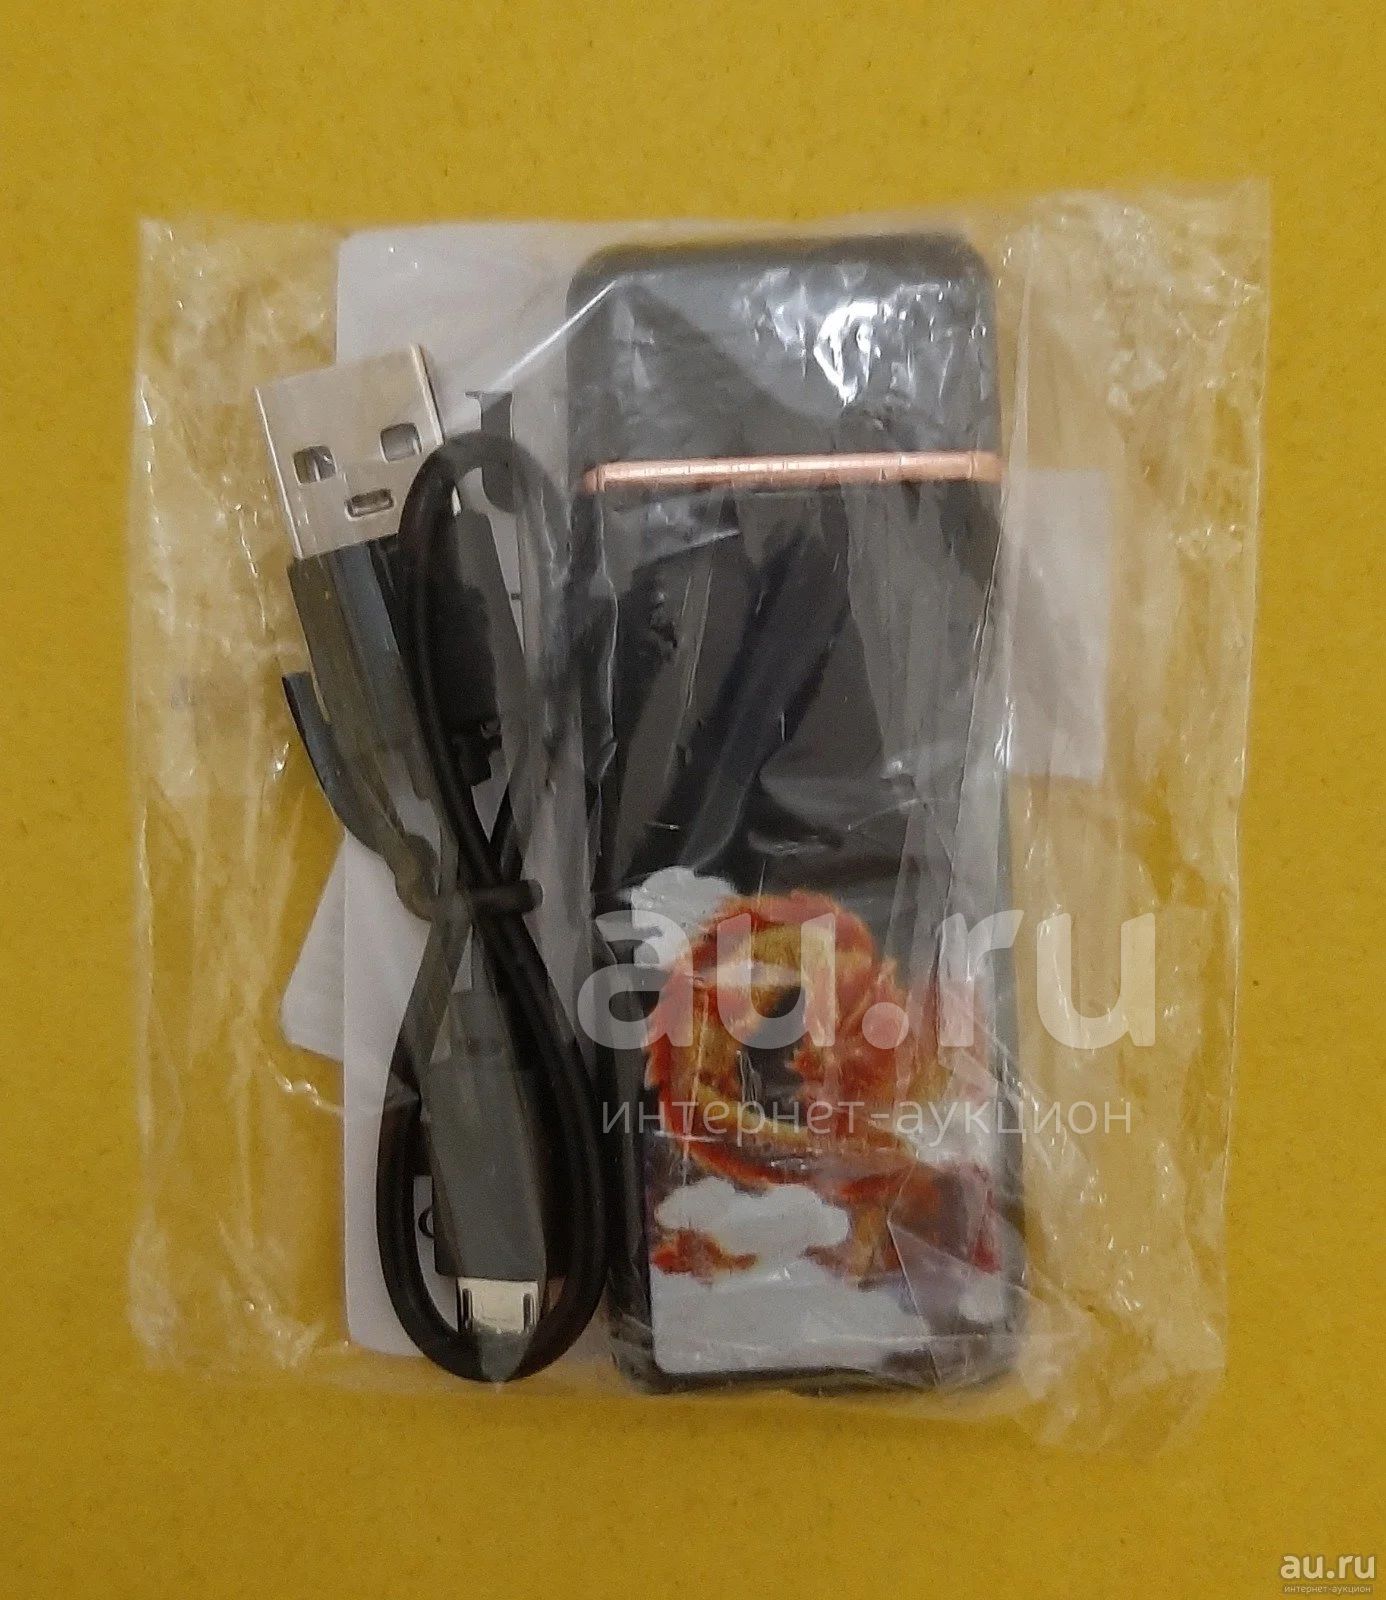 Электронная сенсорная USB-зажигалка (спираль накаливания) - 2. Новая .